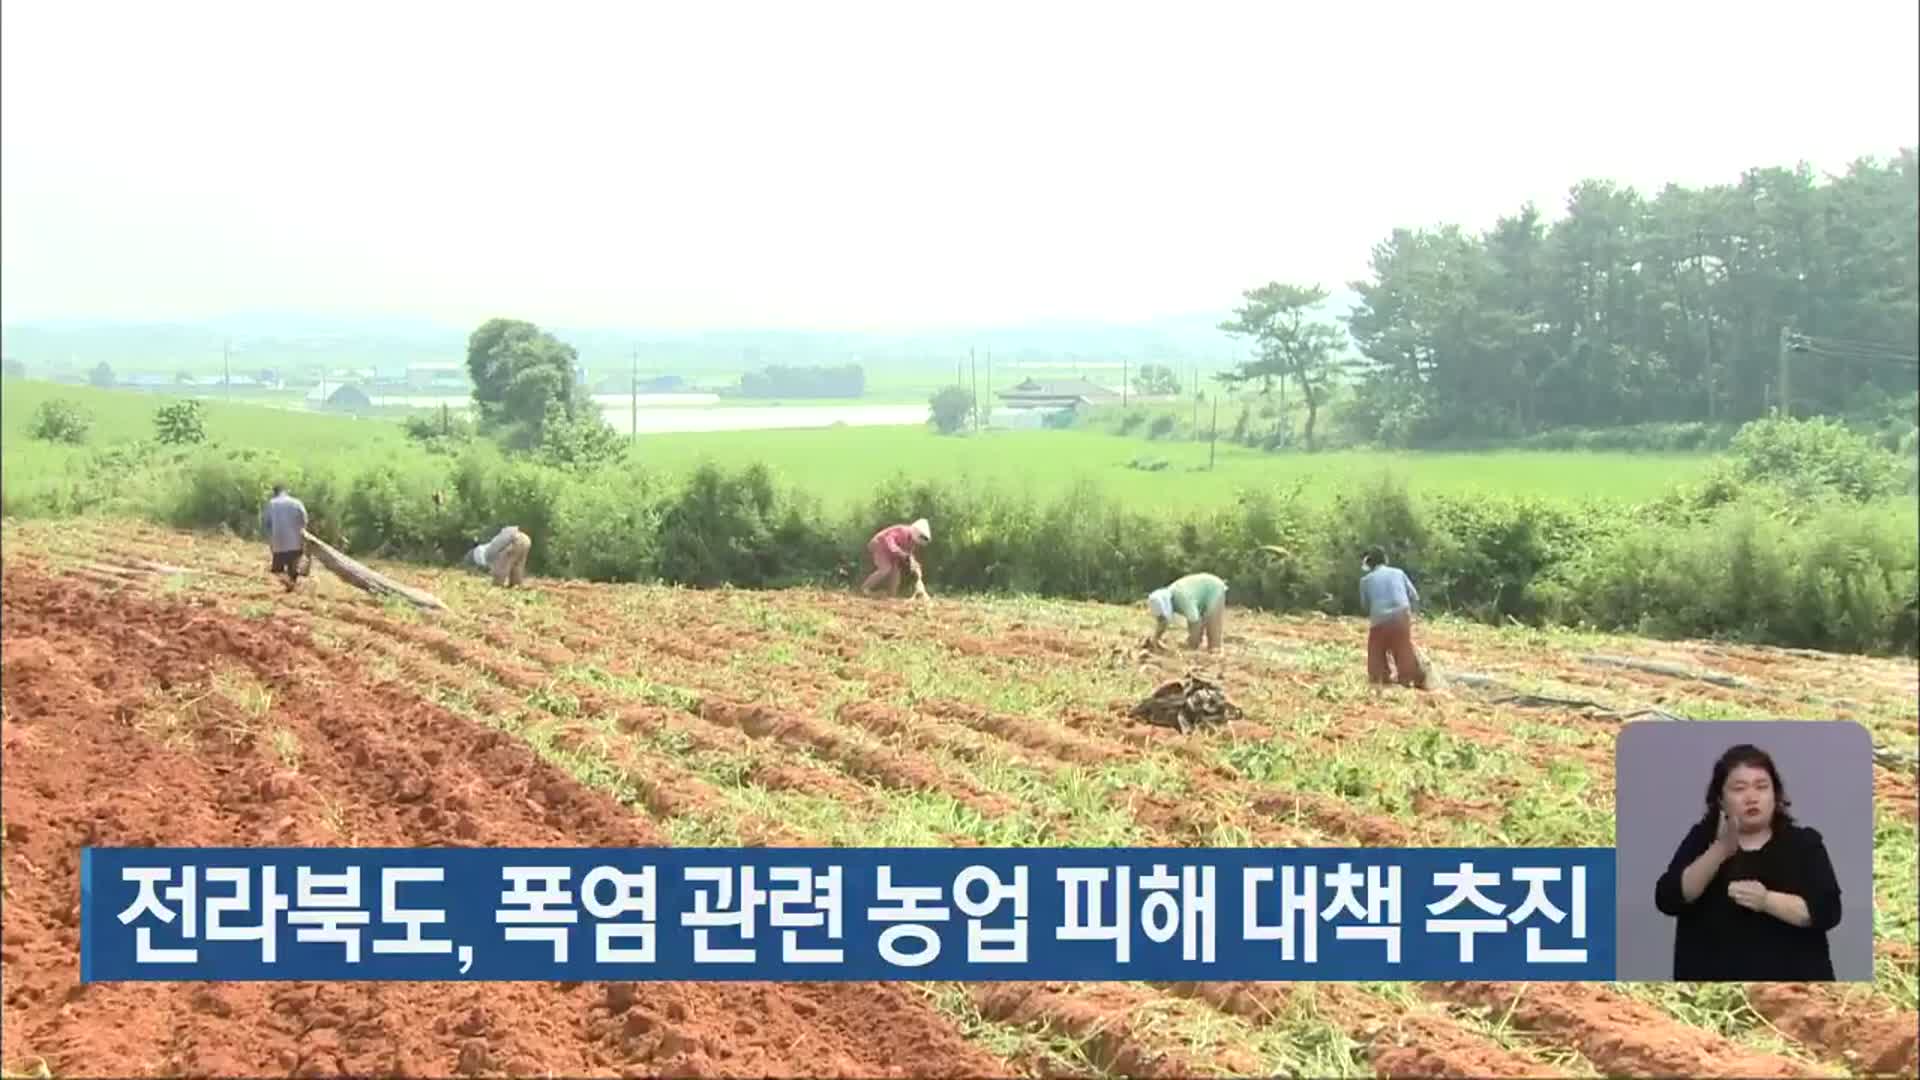 전라북도, 폭염 관련 농업 피해 대책 추진